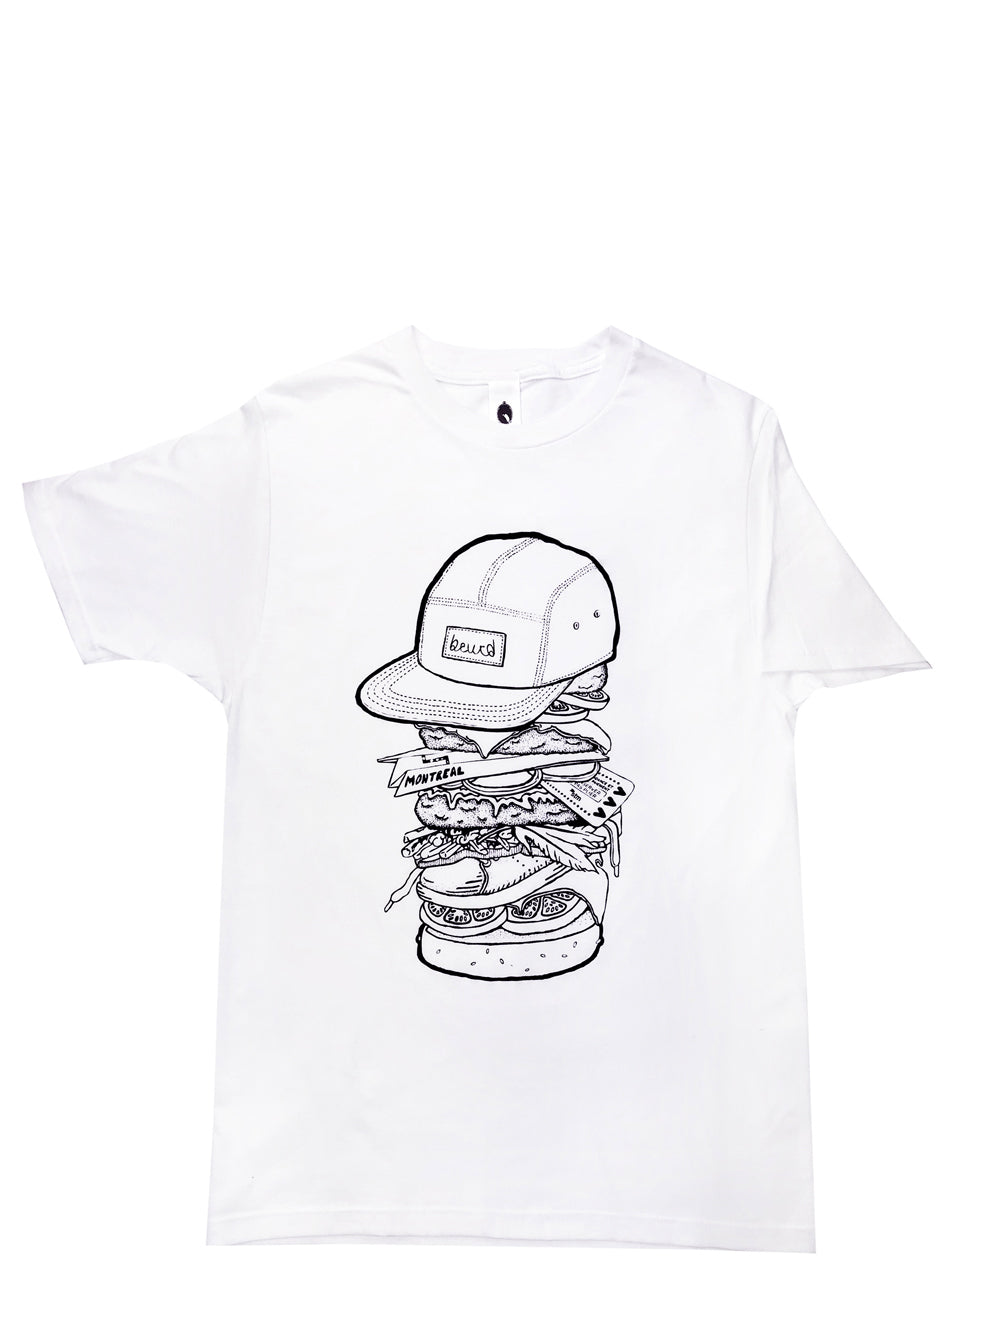 T-shirt blanc MTl Burger, dessin réalisé et sérigraphié par Beurd